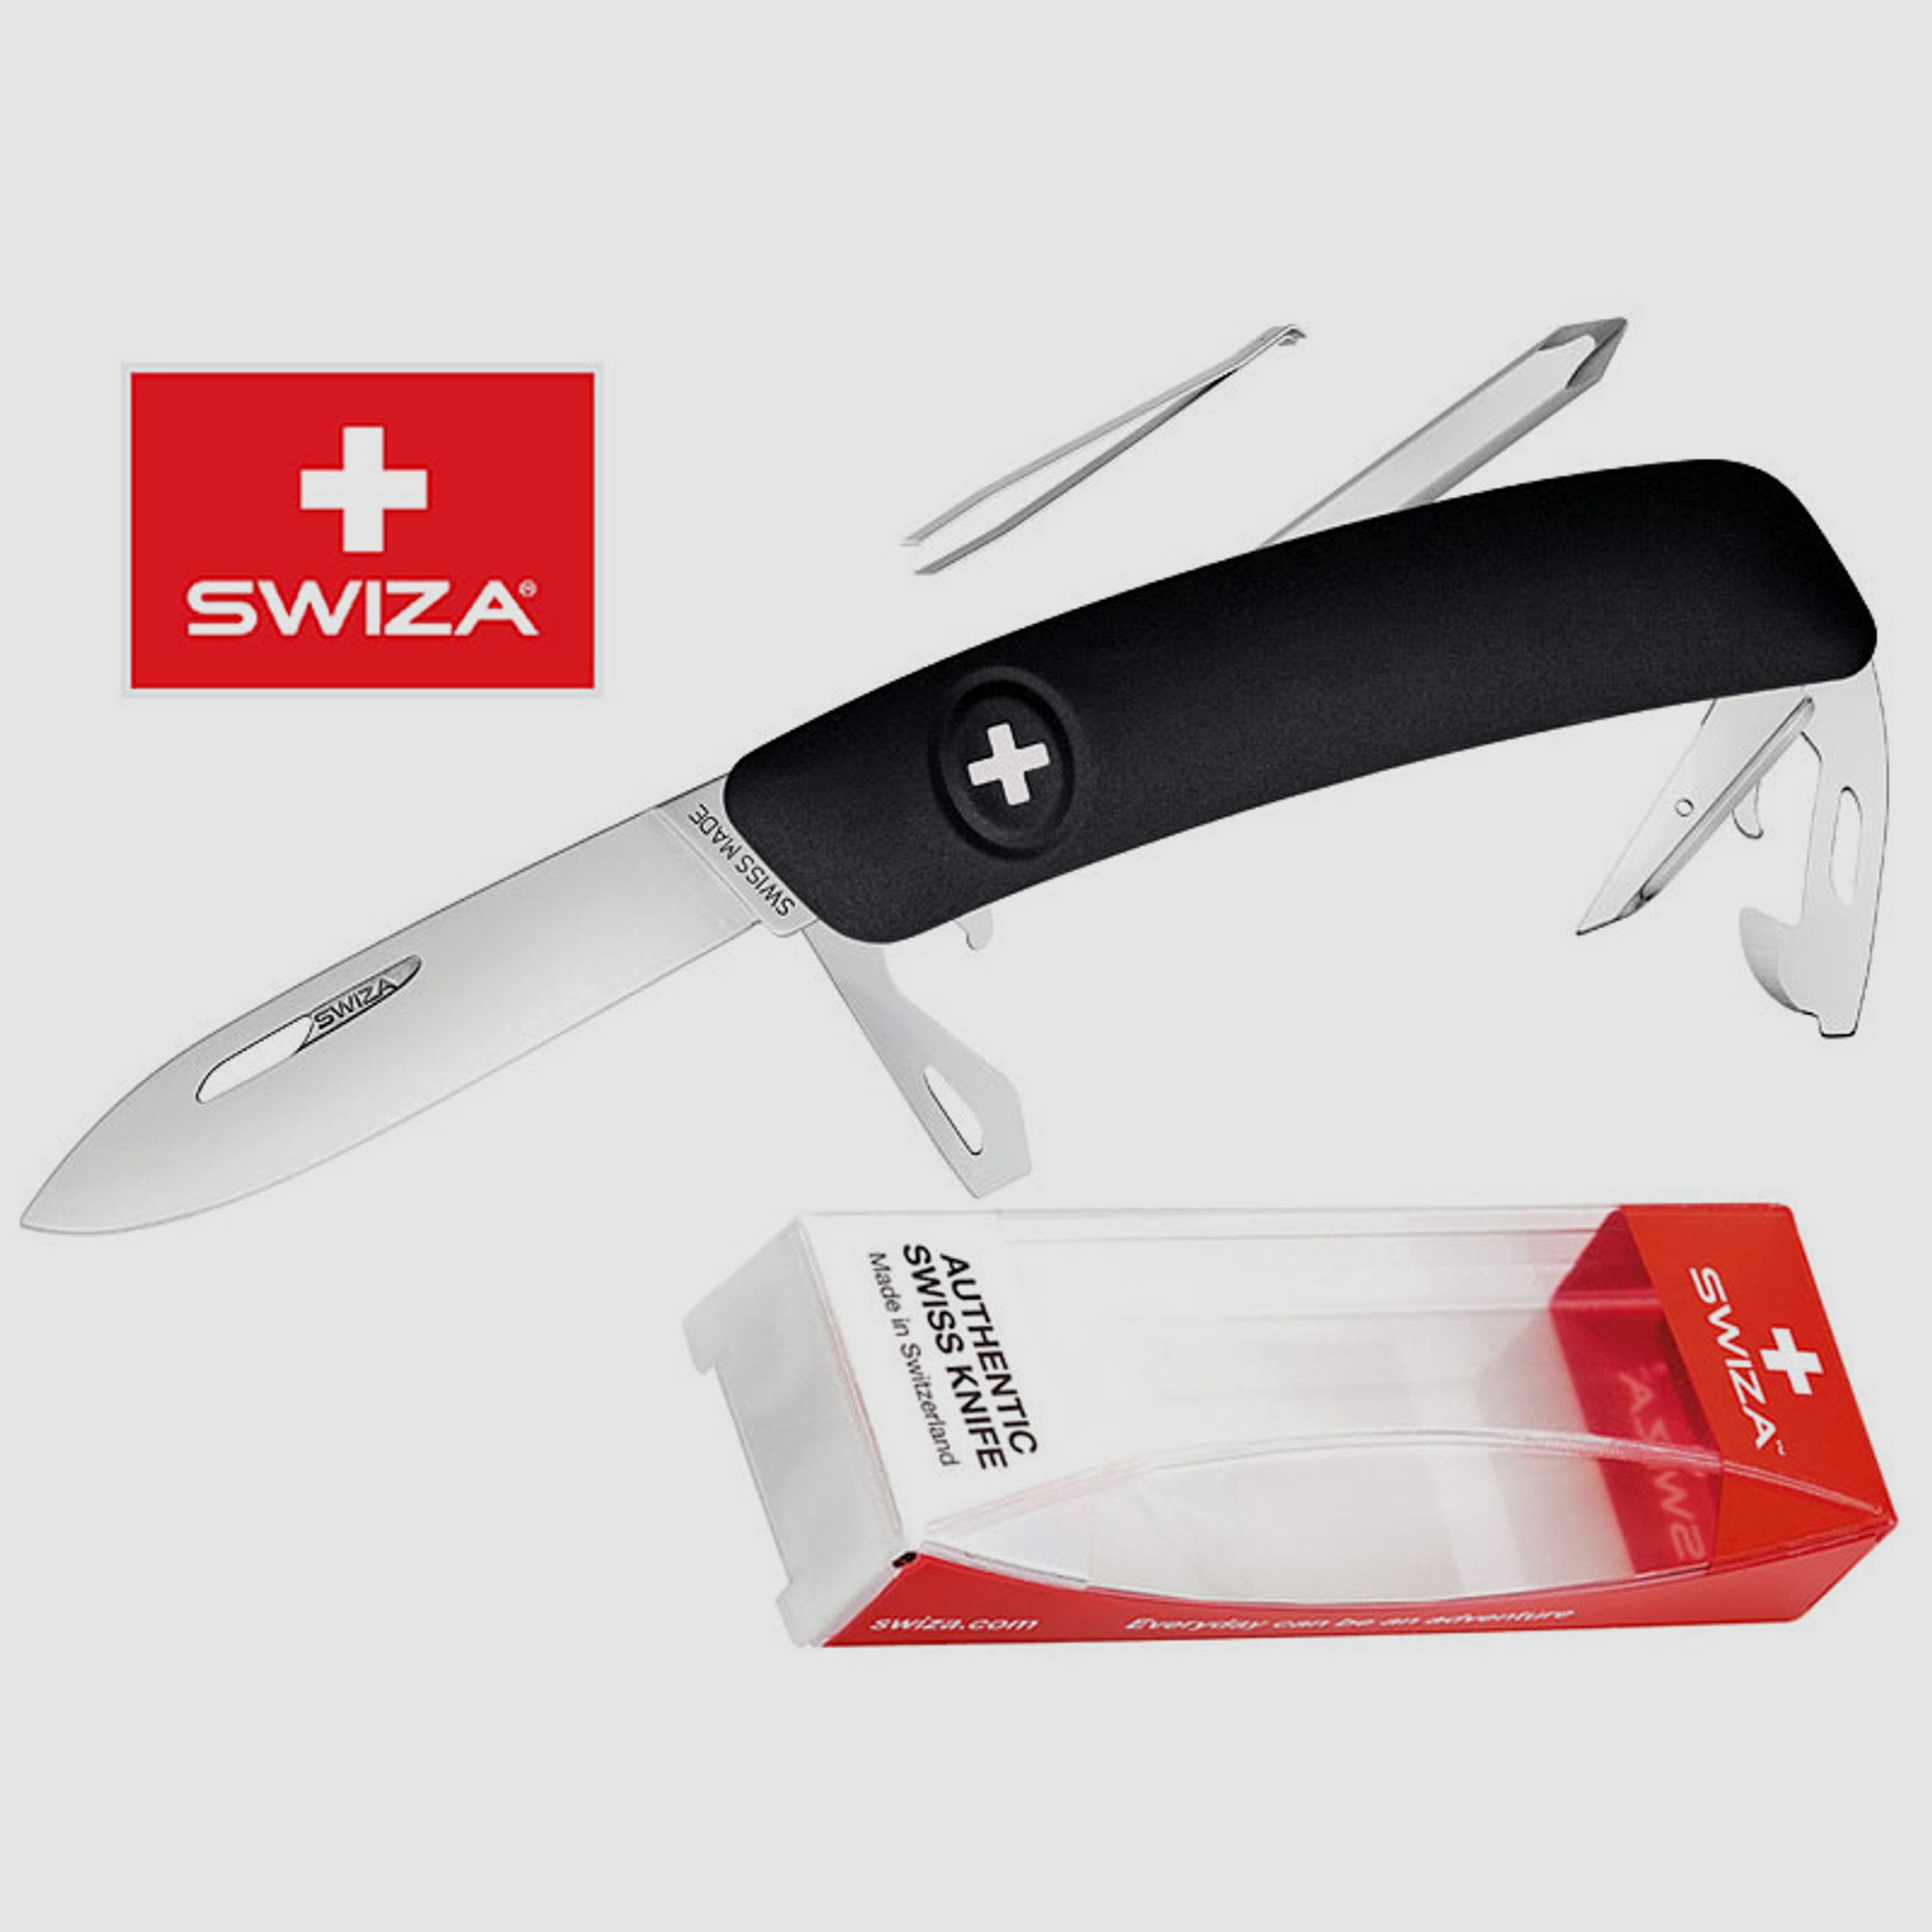 SWIZA Schweizer Messer D04, schwarz, Edelstahl 440, 11 Funktionen, Kreuzschlitzdreher, Multi-Tool